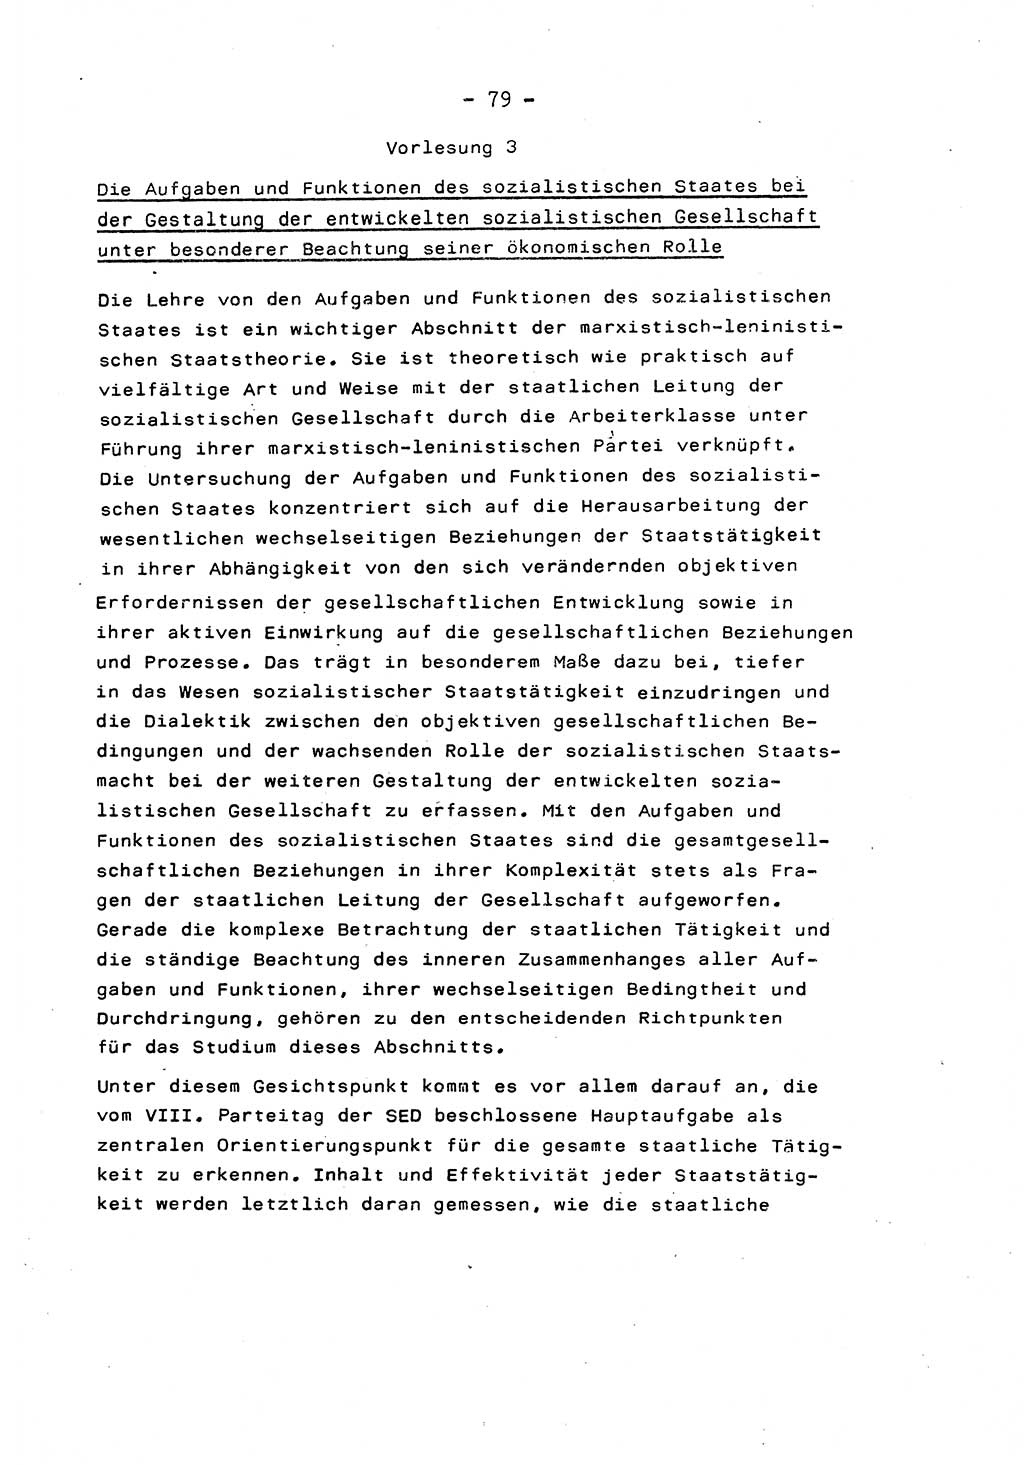 Marxistisch-leninistische Staats- und Rechtstheorie [Deutsche Demokratische Republik (DDR)] 1975, Seite 79 (ML St.-R.-Th. DDR 1975, S. 79)